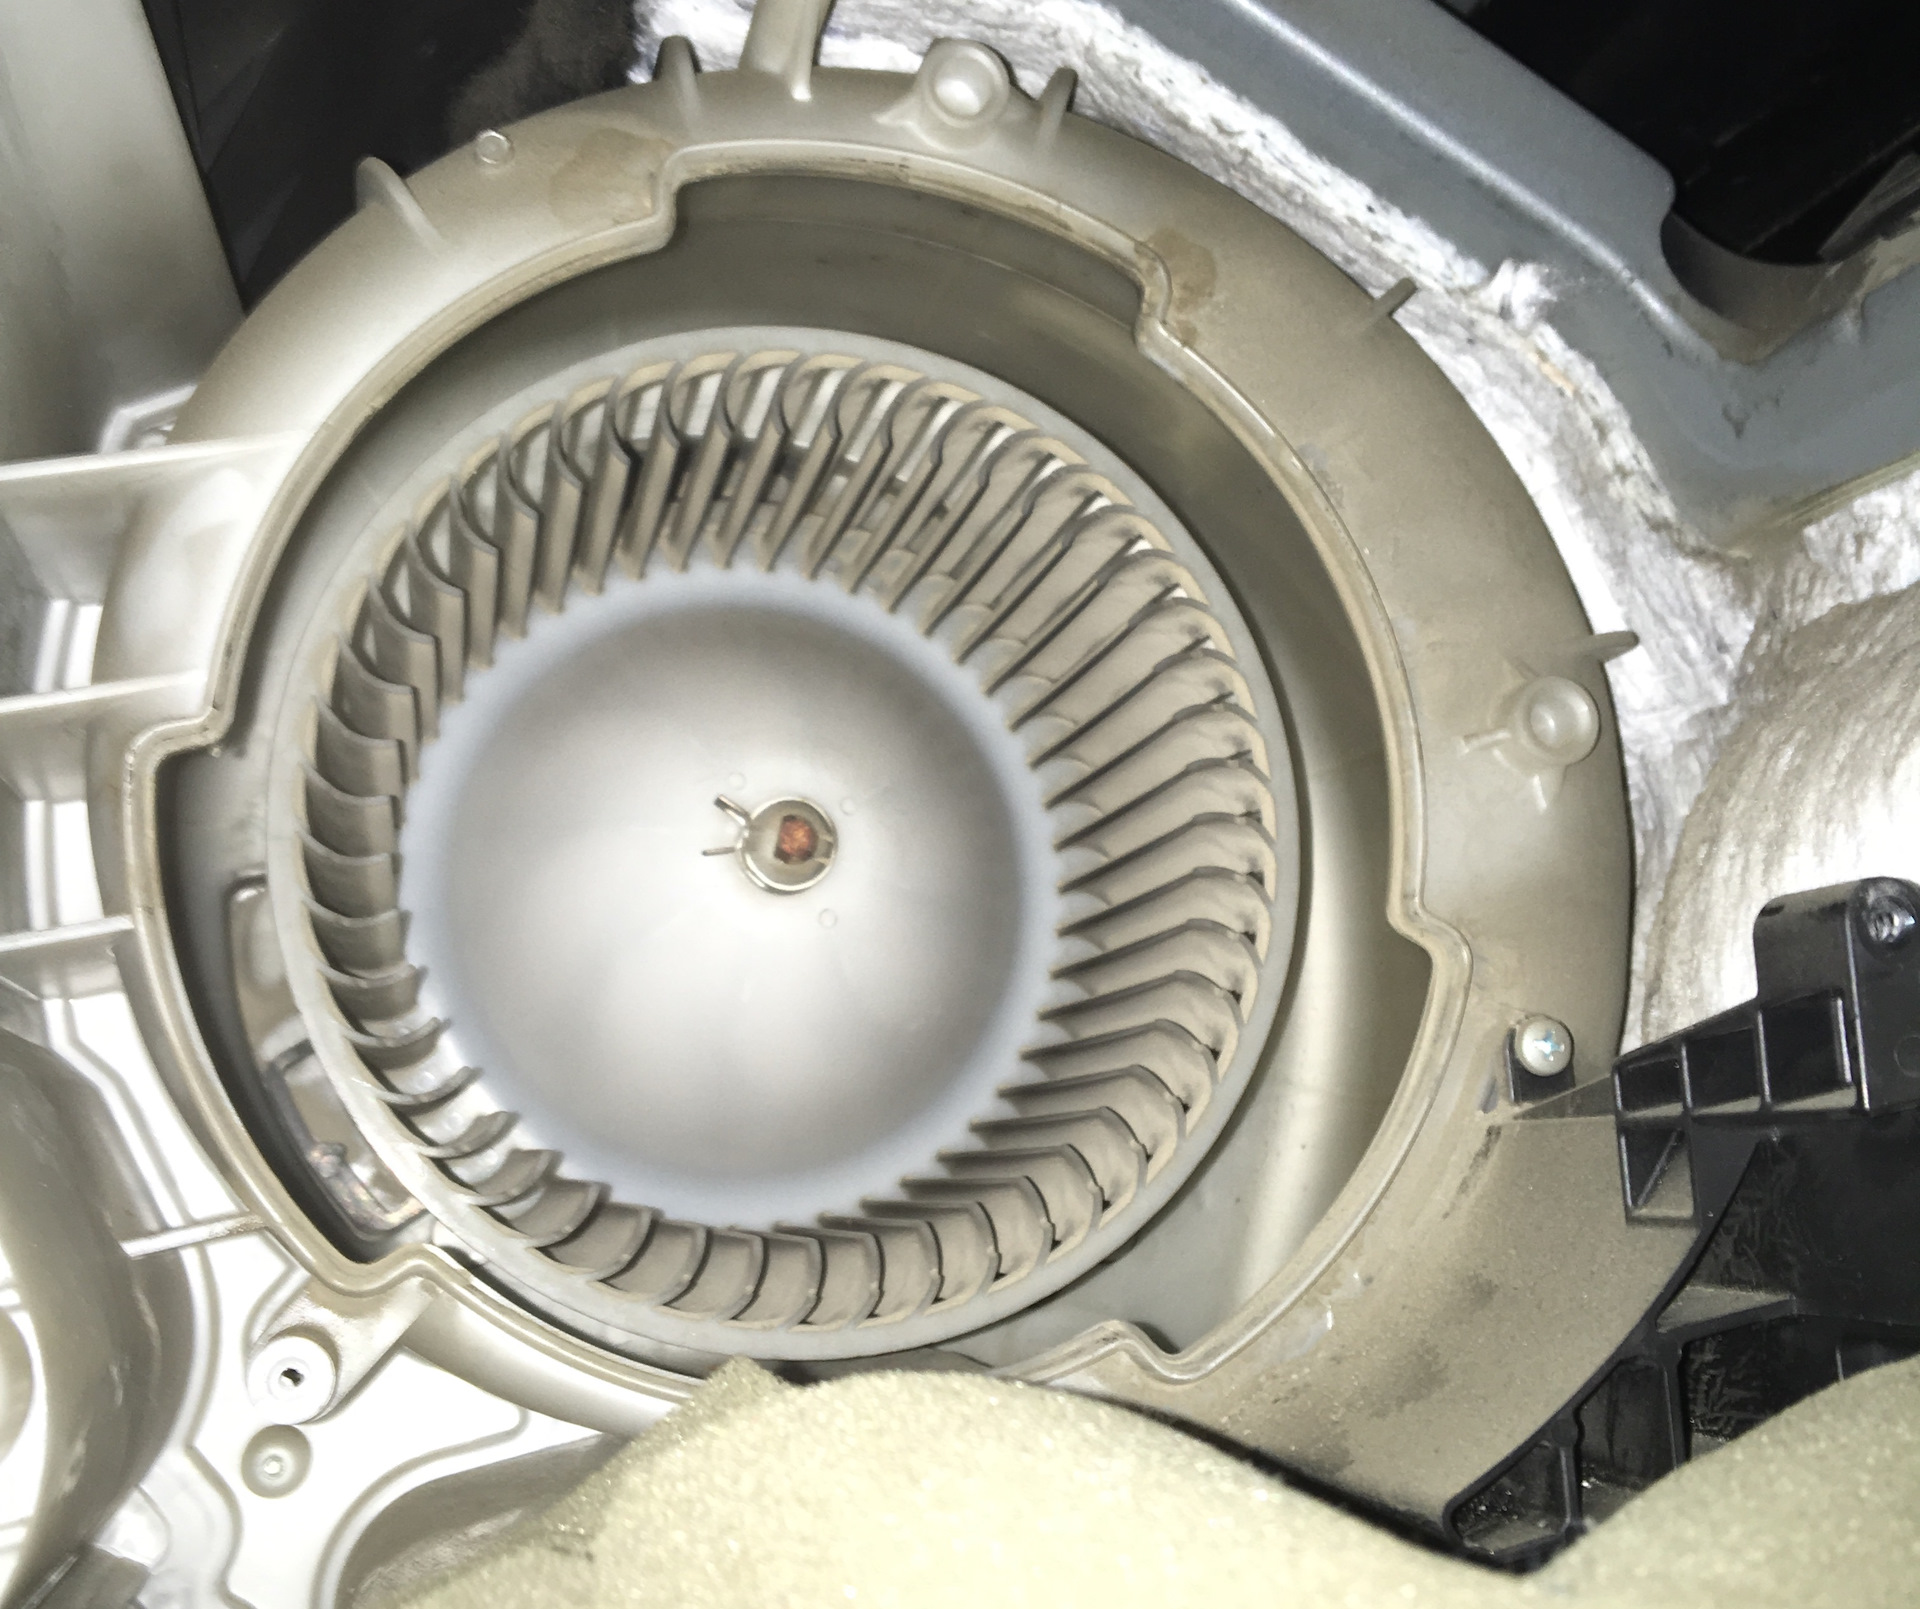 Мотор печки Мазда 3 BK. Фишка мотора отопителя Мазда 3. Mazda CX-5 2020 моторчик печки отопителя. Подшипники электродвигателя отопителя Мазда 3. Замена печки мазда 3